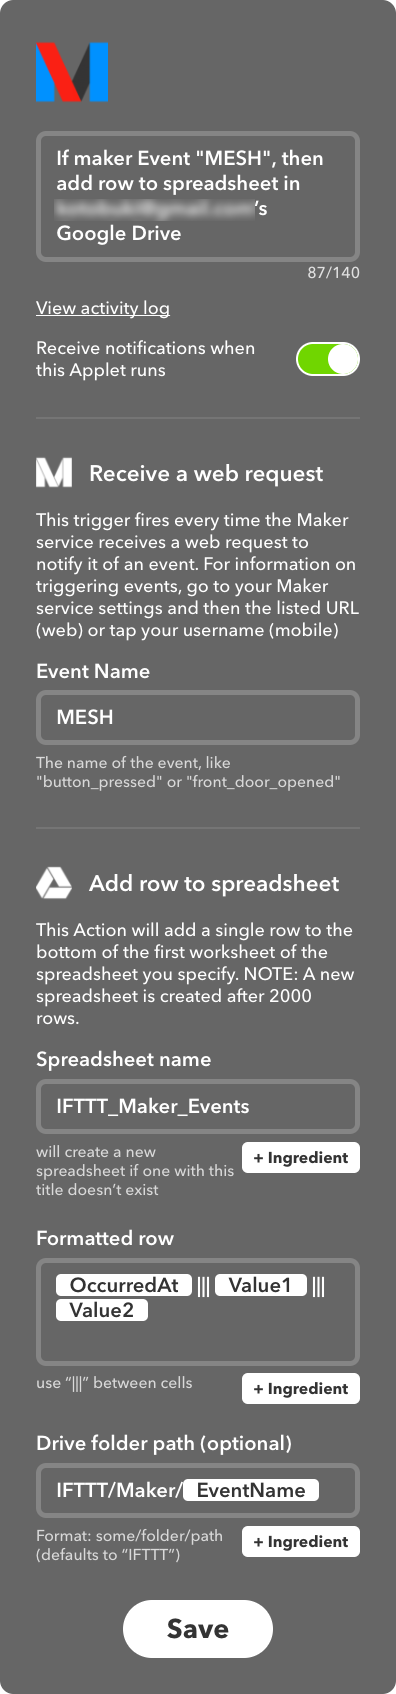 FireShot Capture 114 - If maker Event _MESH_, then add row t_ - https___ifttt.com_applets_51487550.png